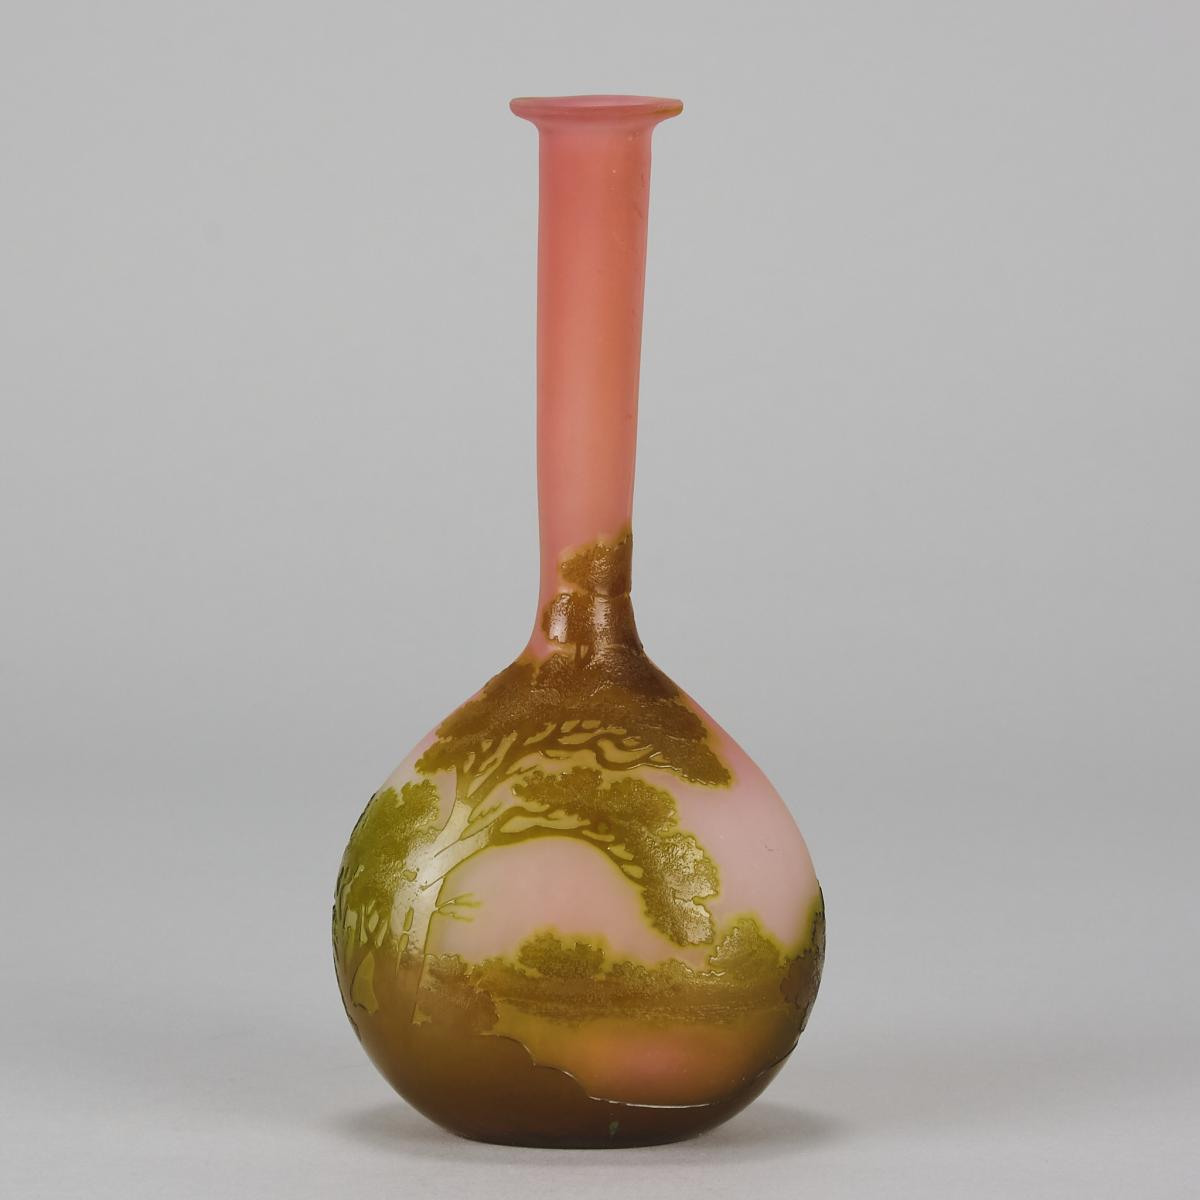 Late 19th Century Art Nouveau Cameo Glass "Banjo Landscape Vase" by Emile Galle